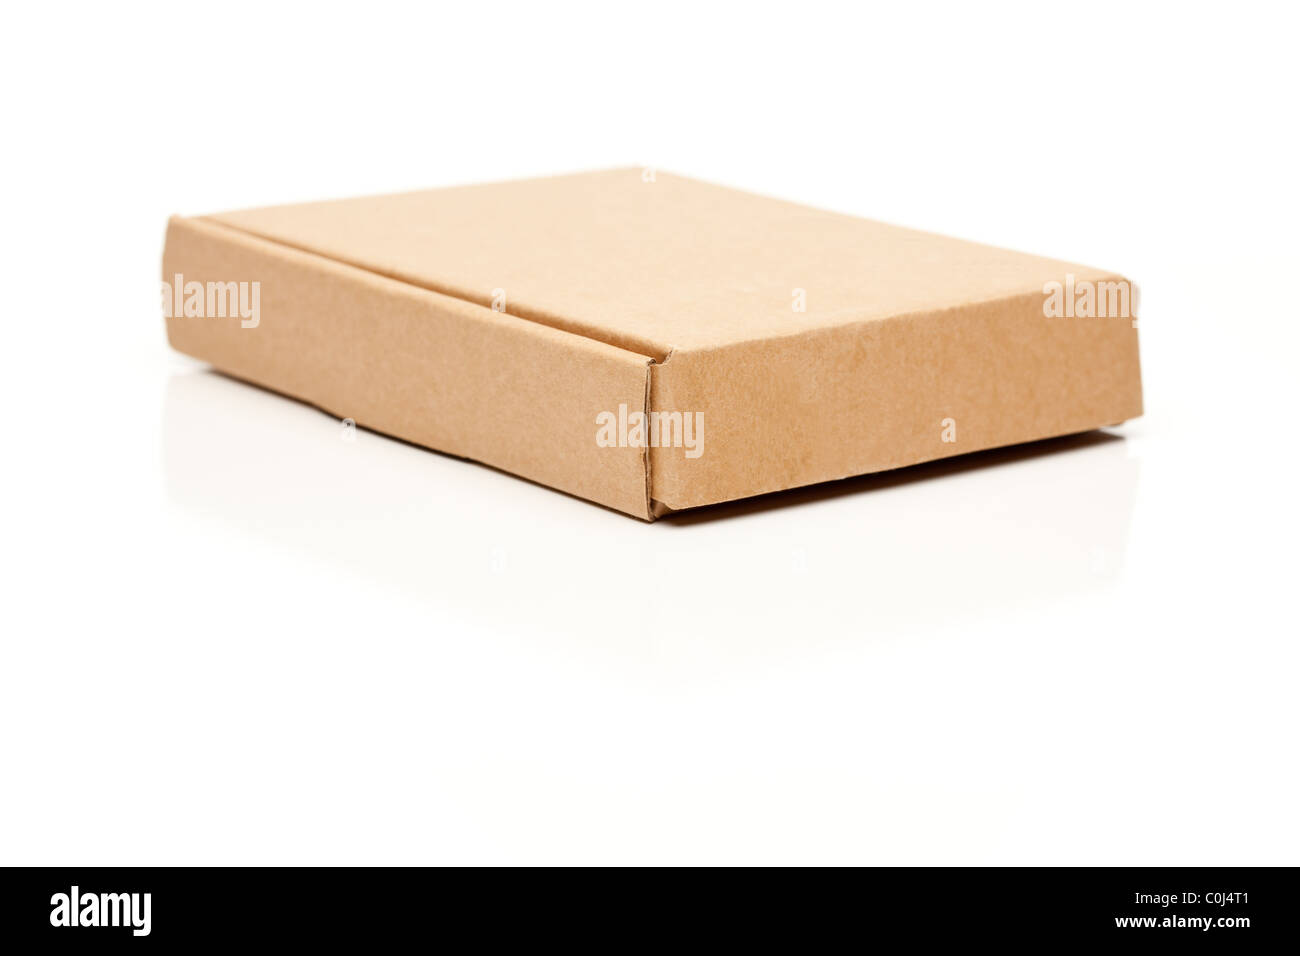 Caja de cartón delgado e imágenes de alta resolución Alamy